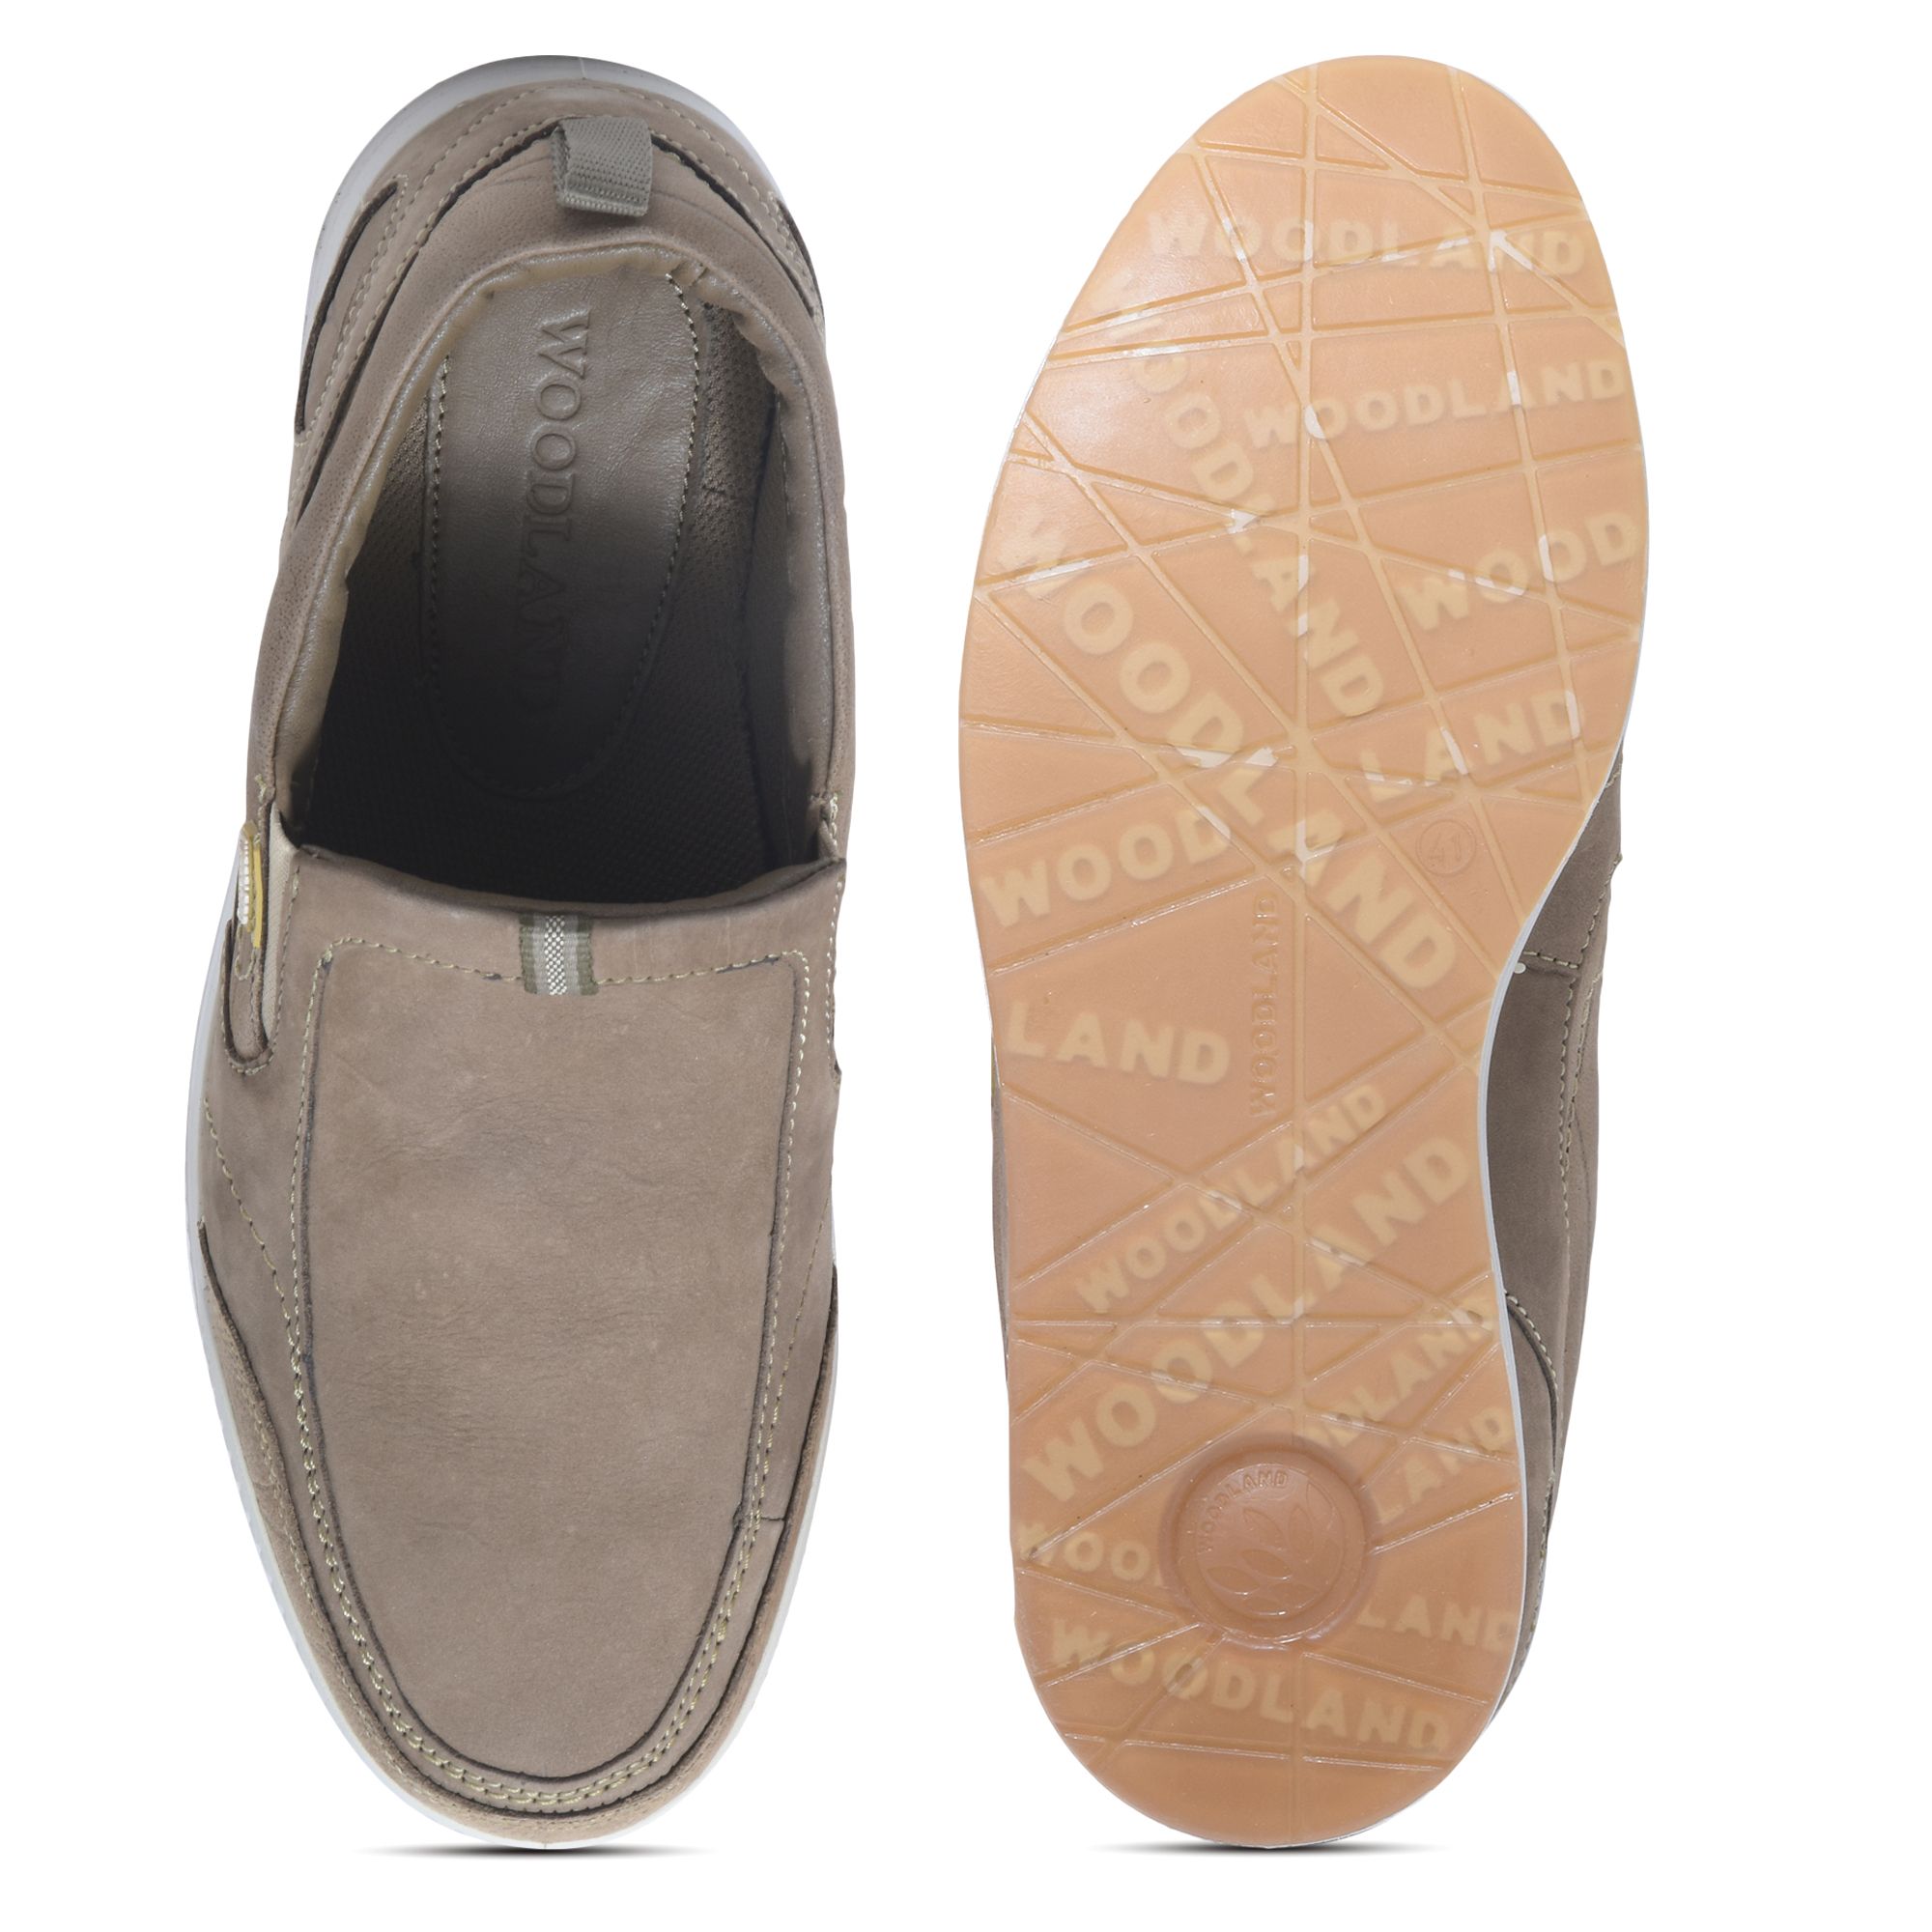 Dubai Khaki Slip-on shoe